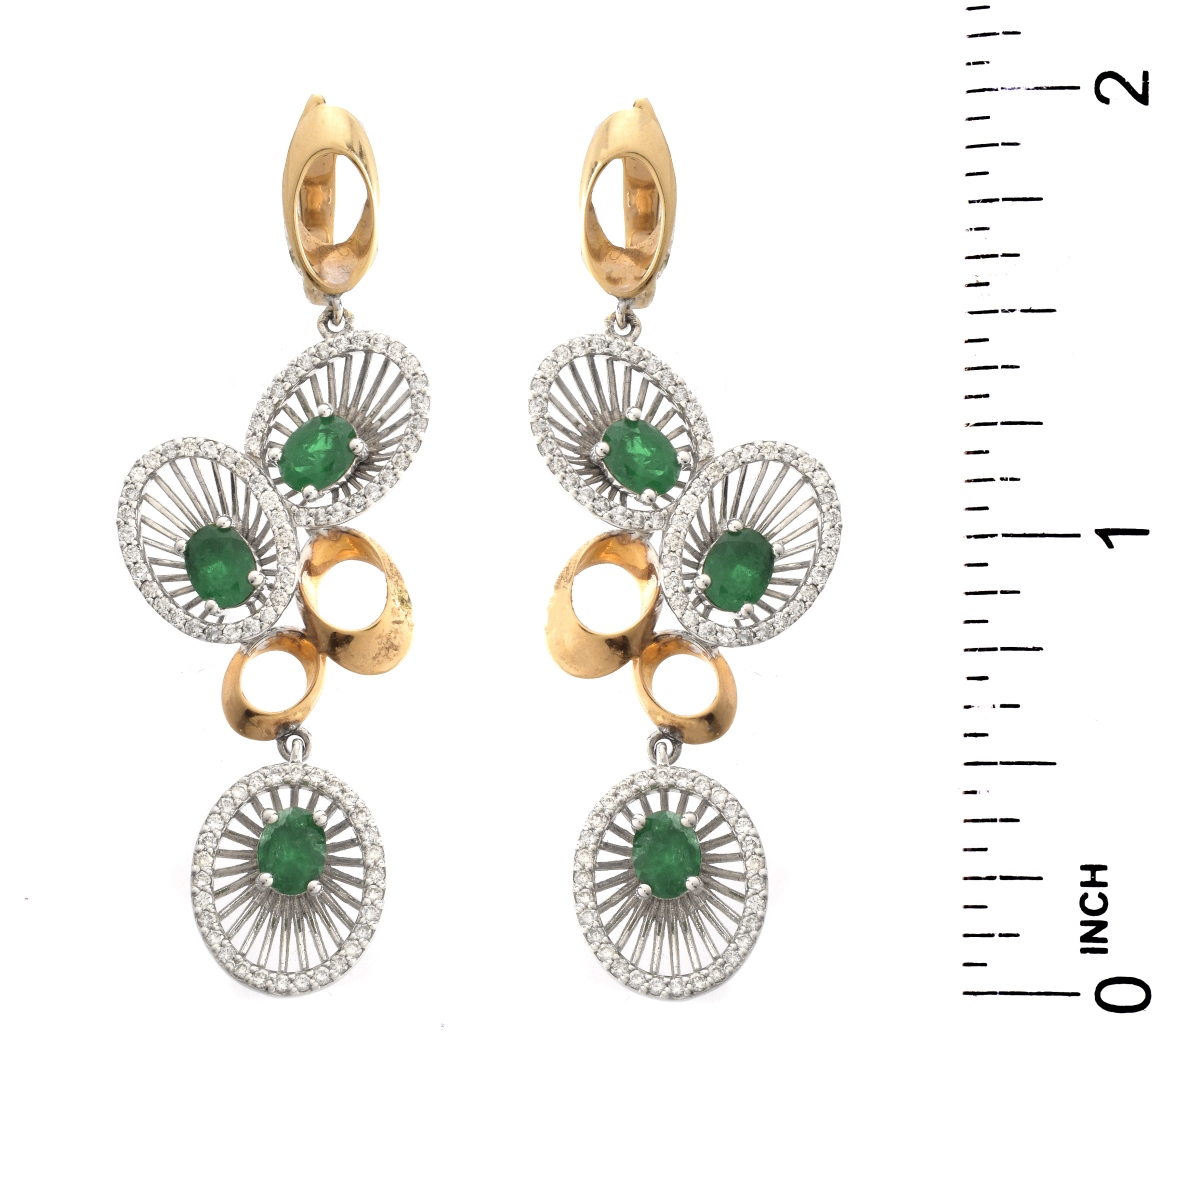 Emerald, Diamond and 18K Earrings. - Image 5 of 5